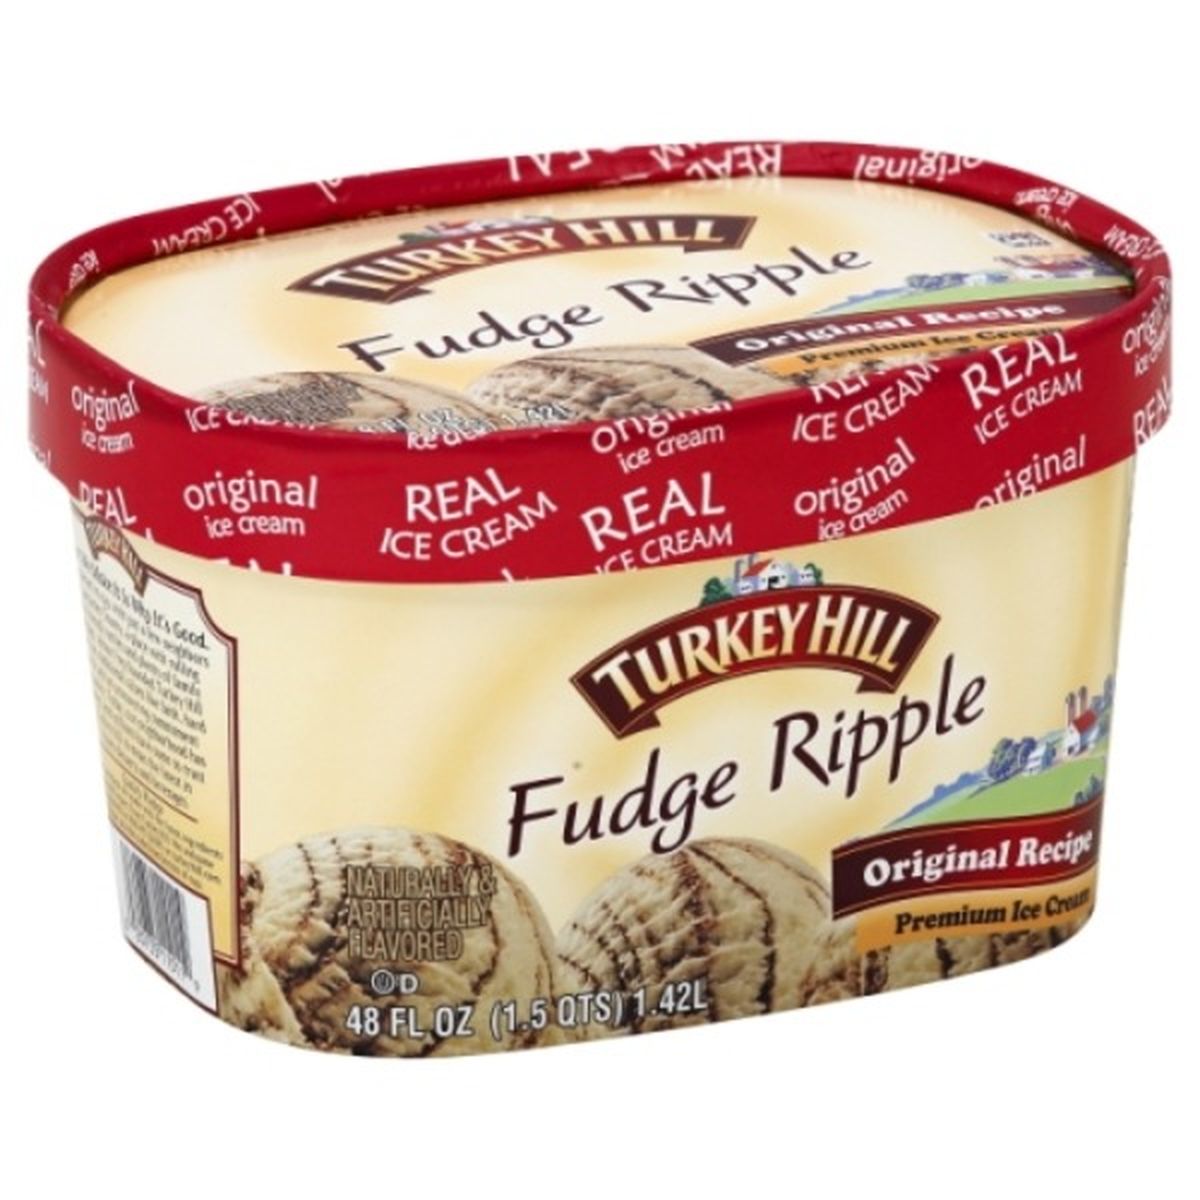 Calories in Turkey Hill Ice Cream, Premium, Fudge Ripple, Original Recipe